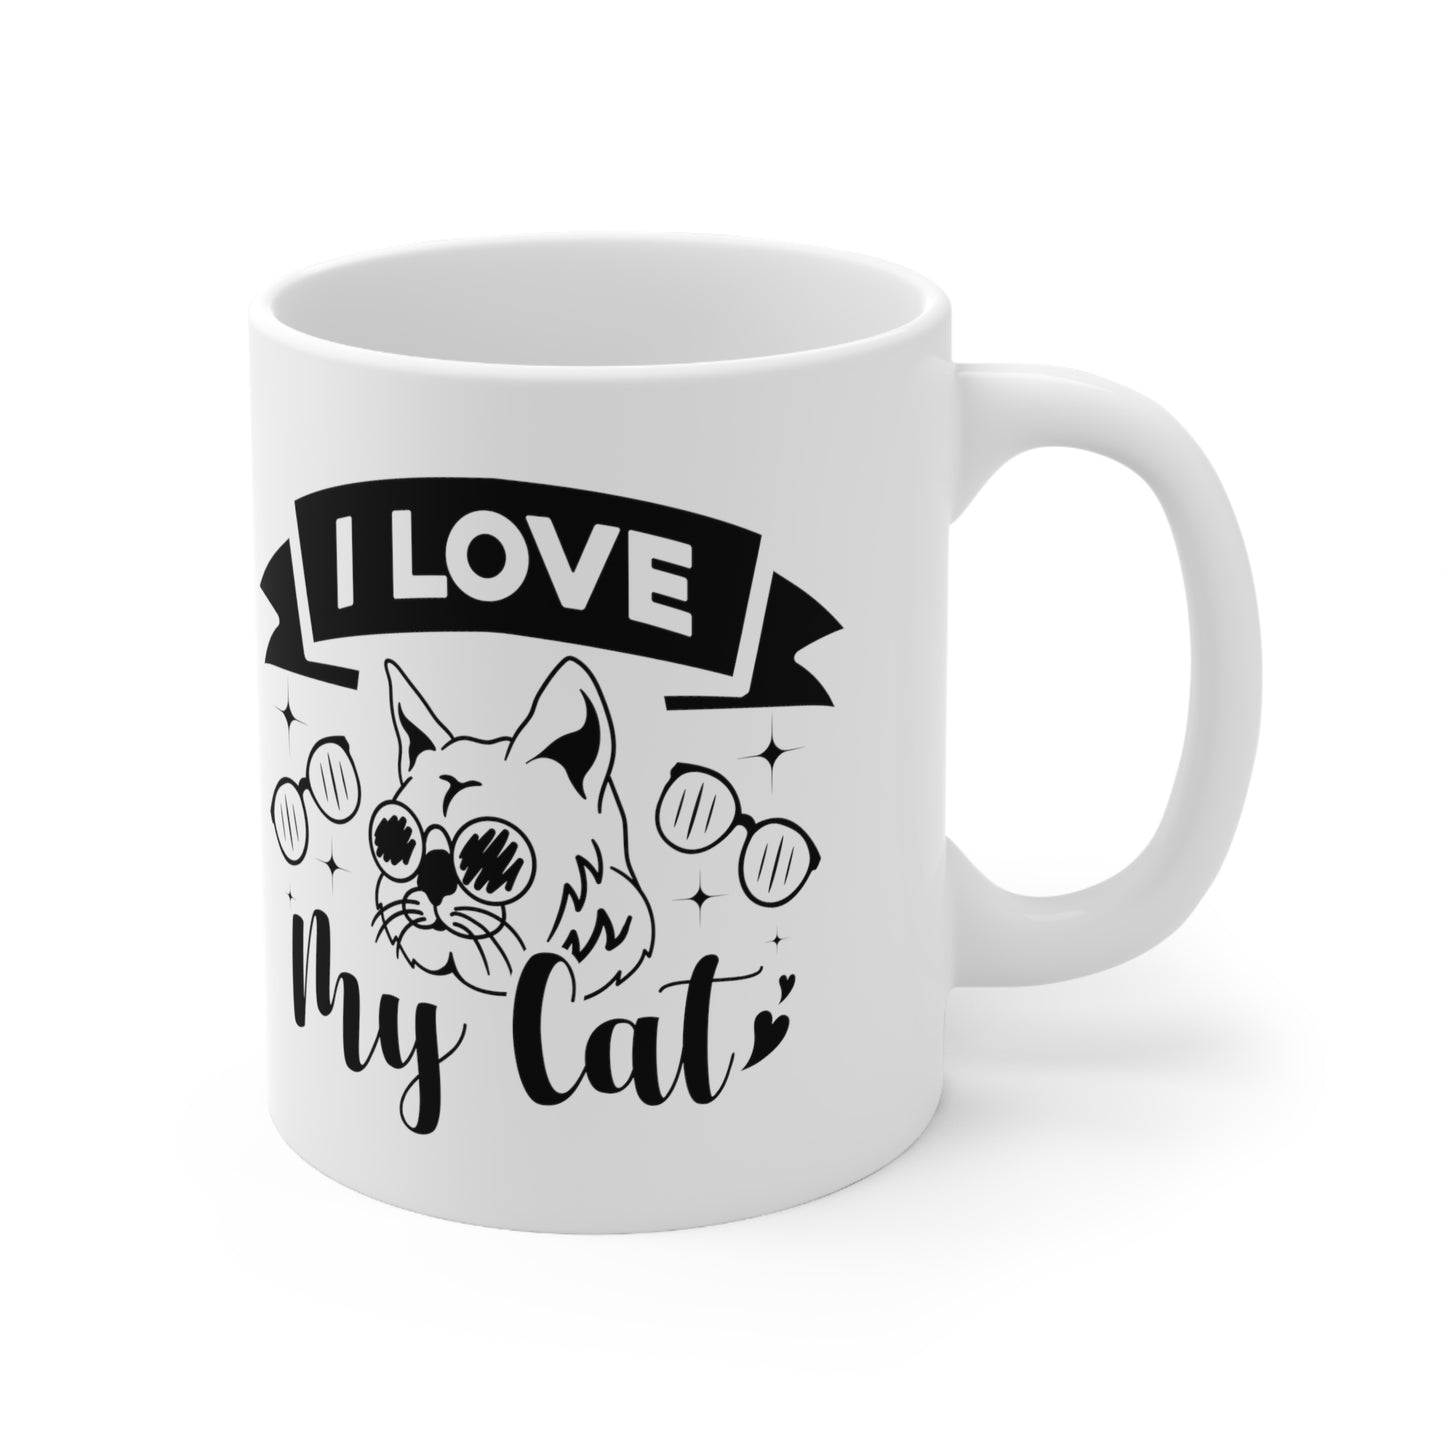 I Love My Cat Ceramic Mug 11oz